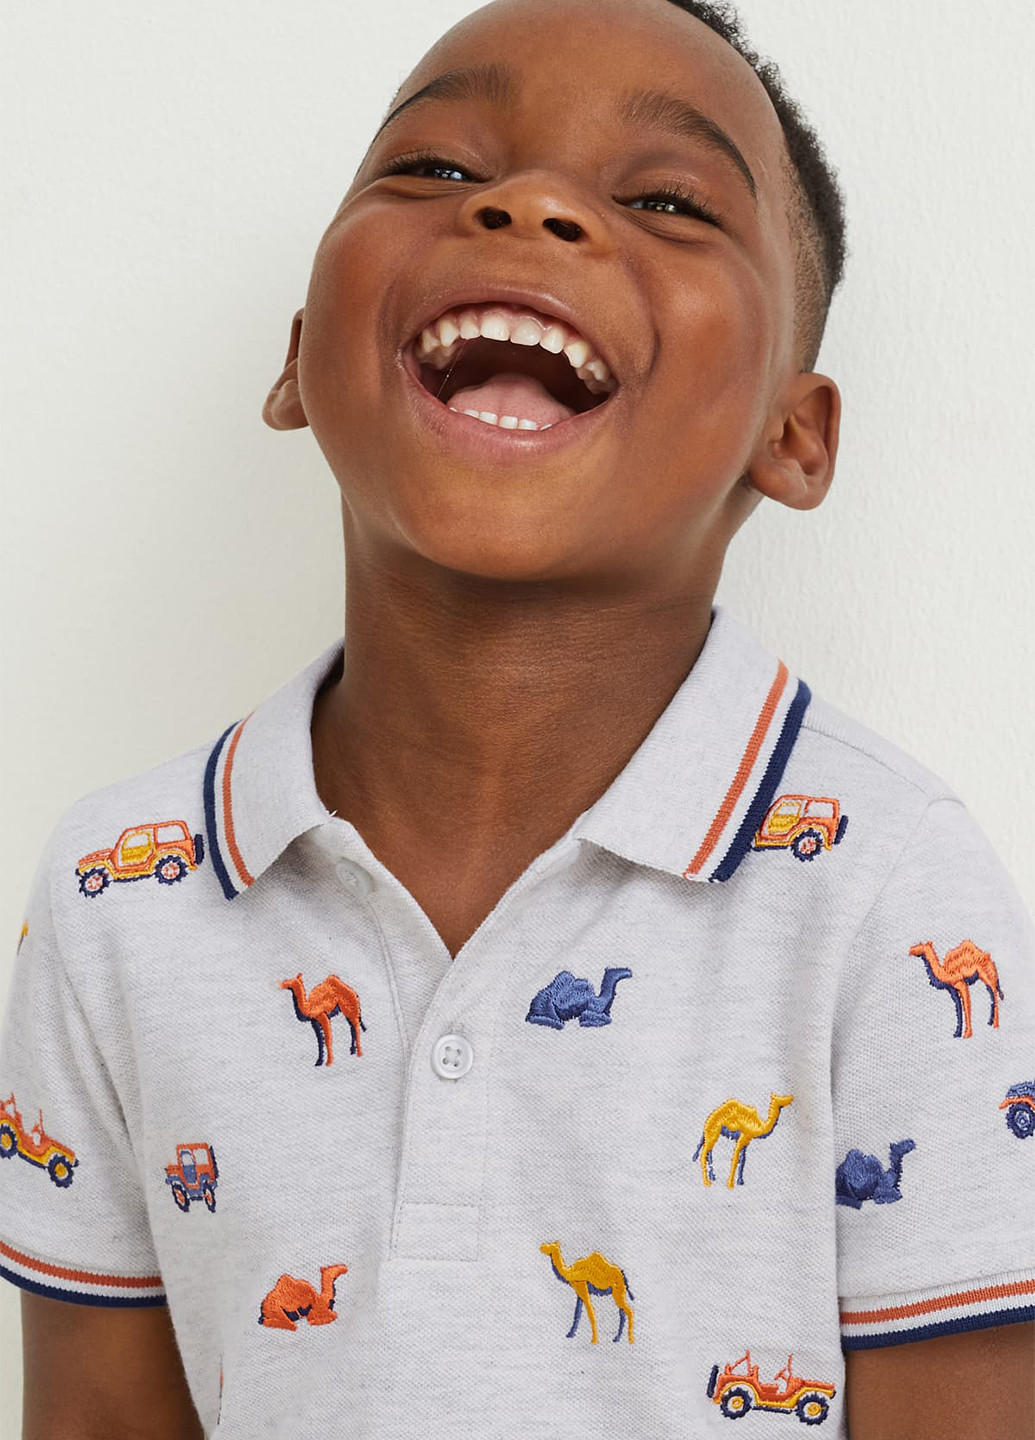 Светло-серая детская футболка-поло для мальчика C&A меланжевая